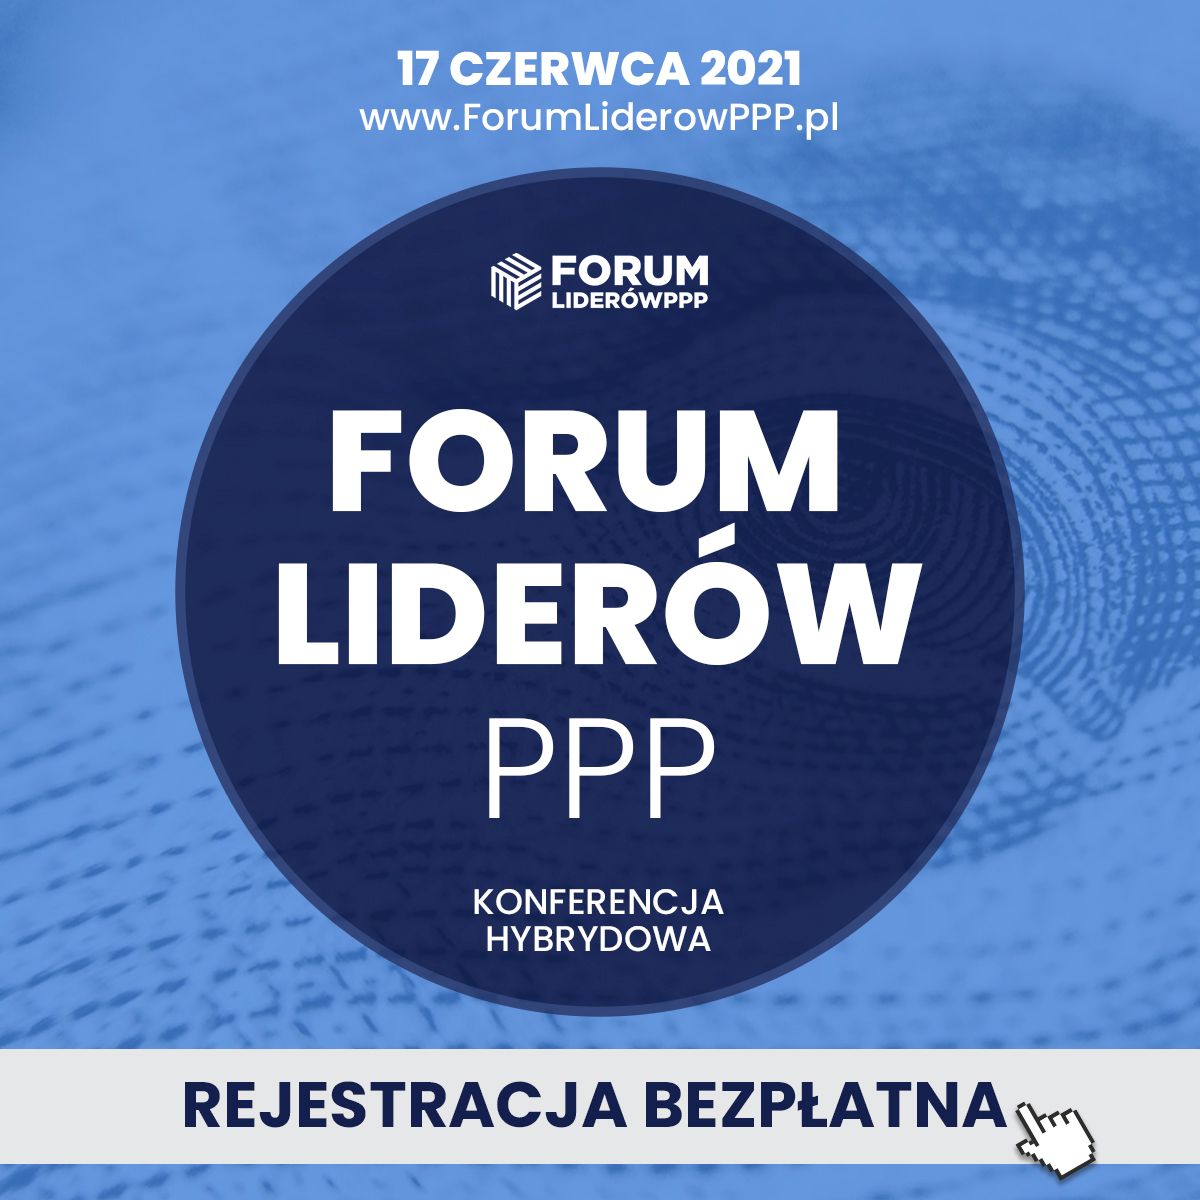 Wydarzenie Forum Liderów PPP